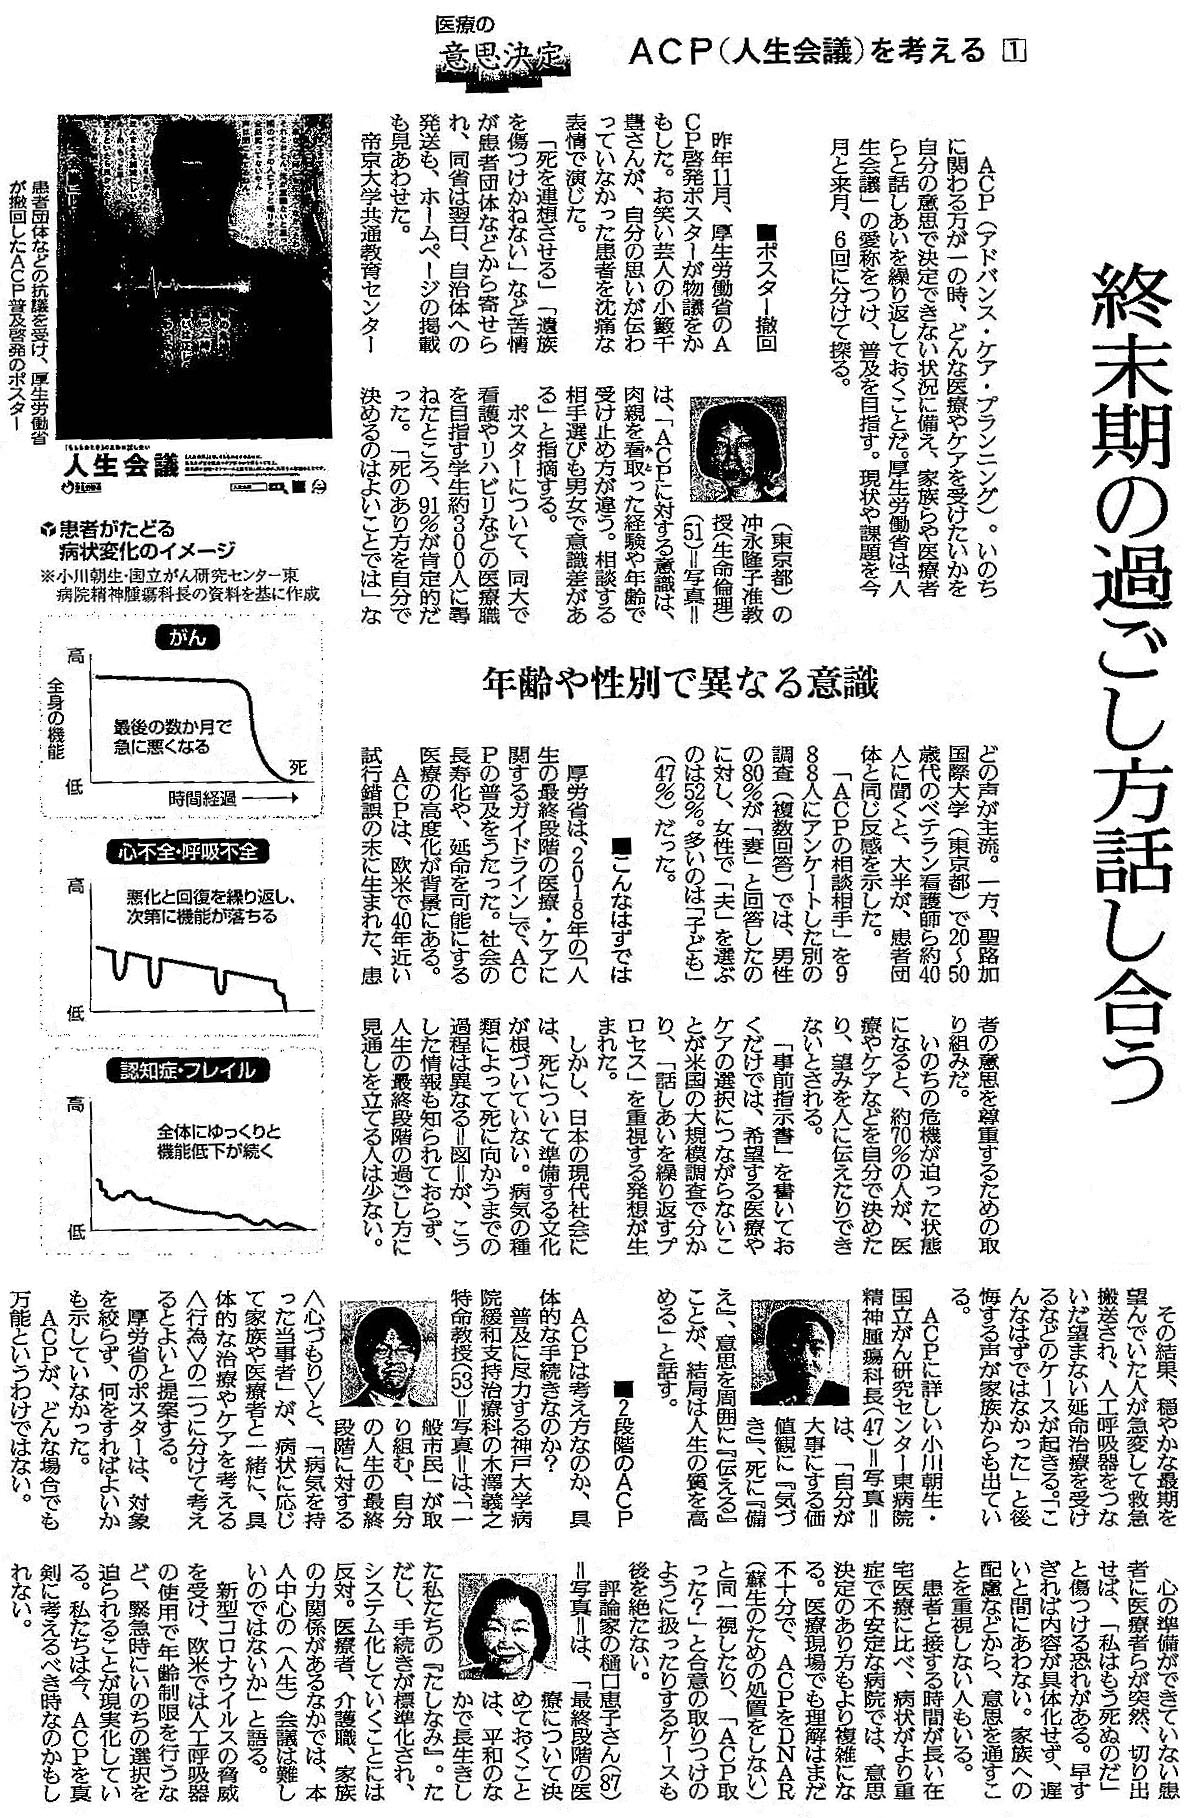 読売新聞 2020年4月20日掲載記事